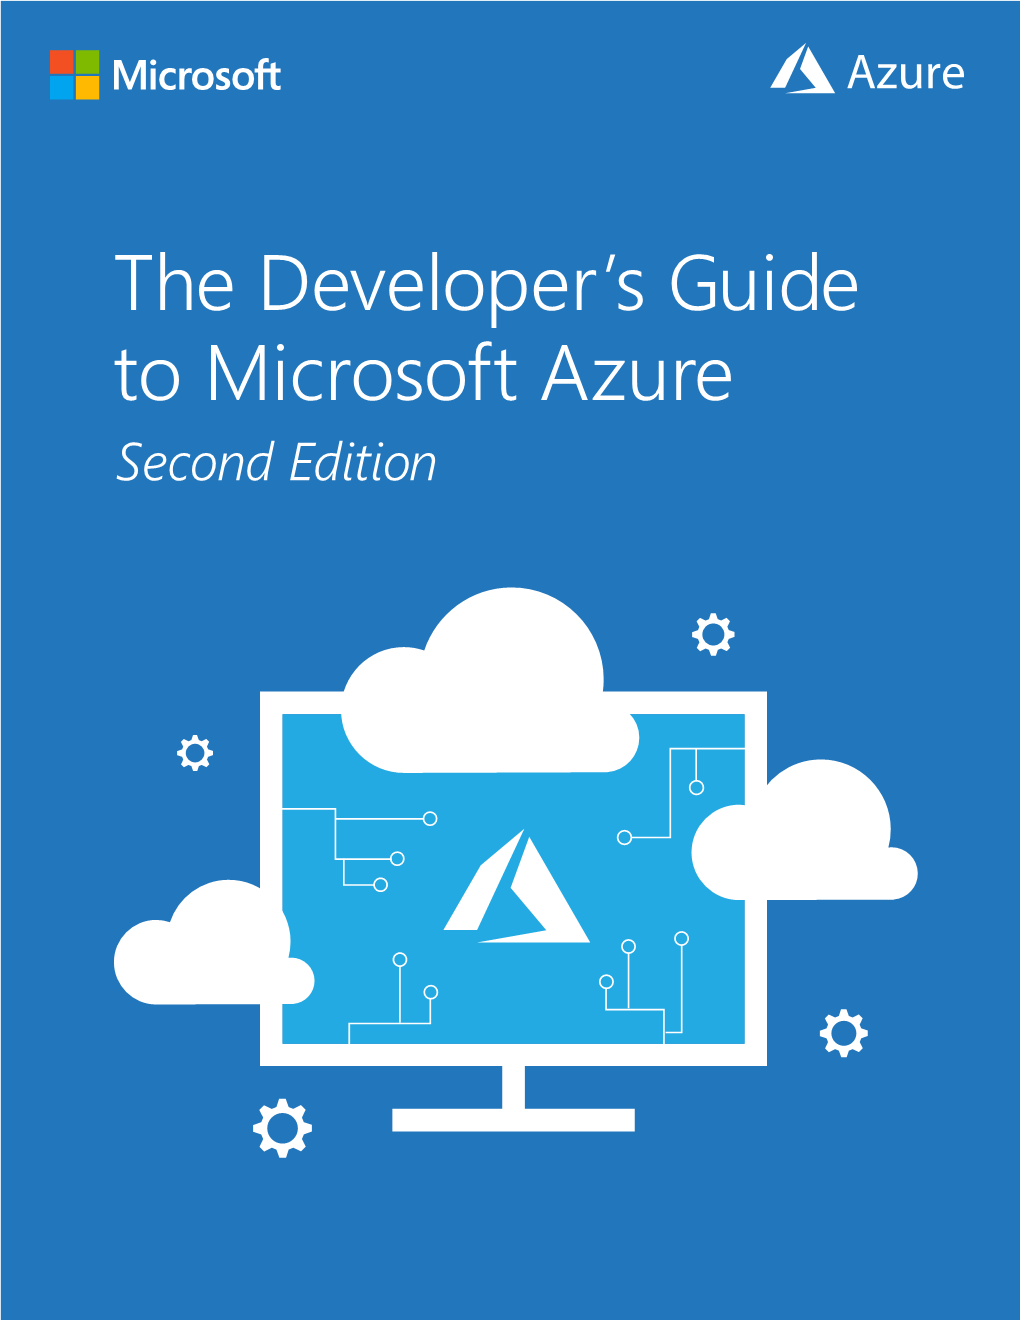 The Developer's Guide to Microsoft Azure